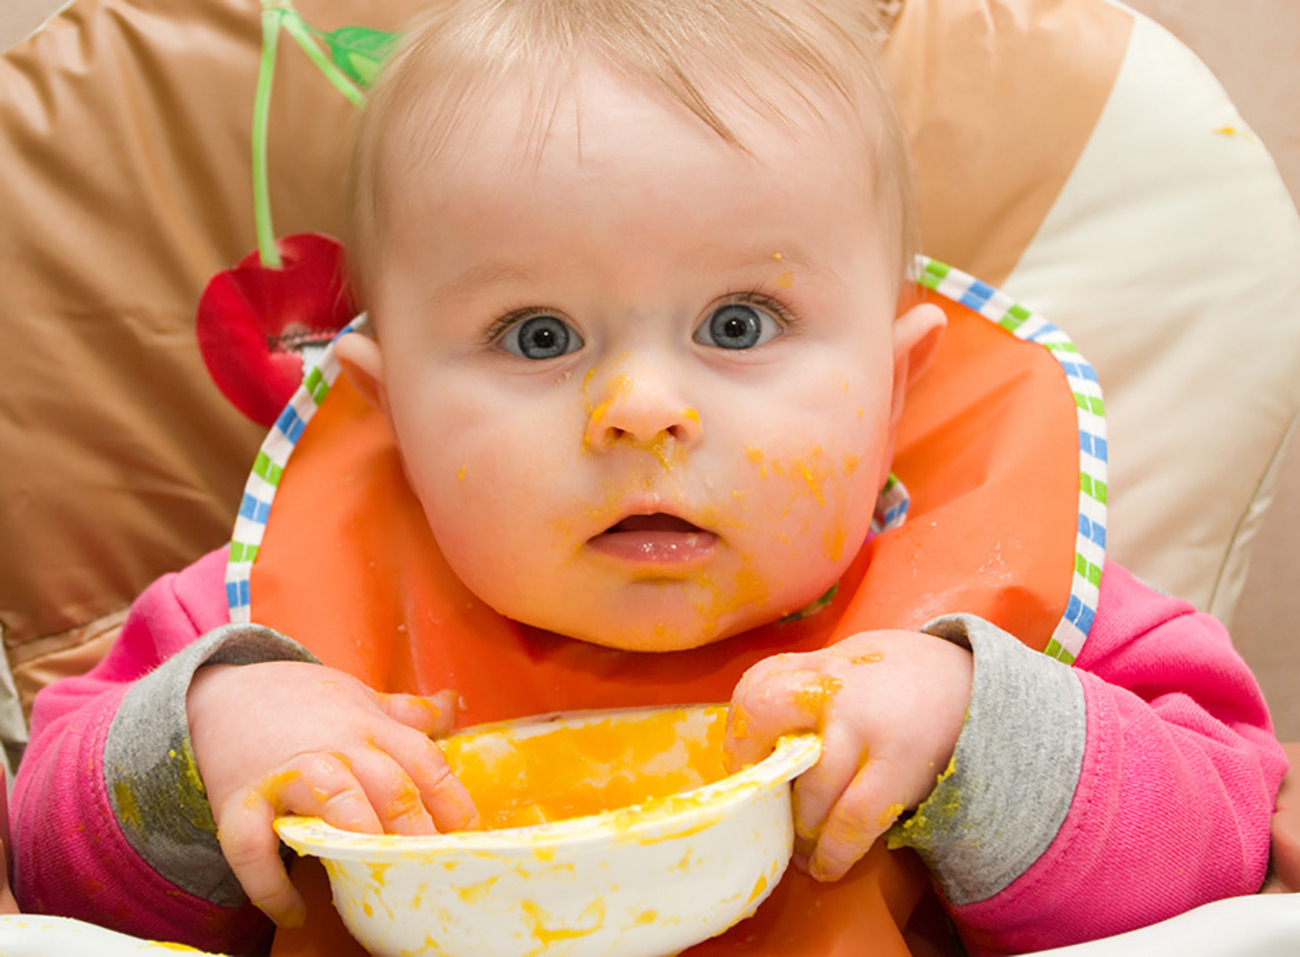 Schéma alimentaire pour un bébé de 6 mois: le premier vrai repas